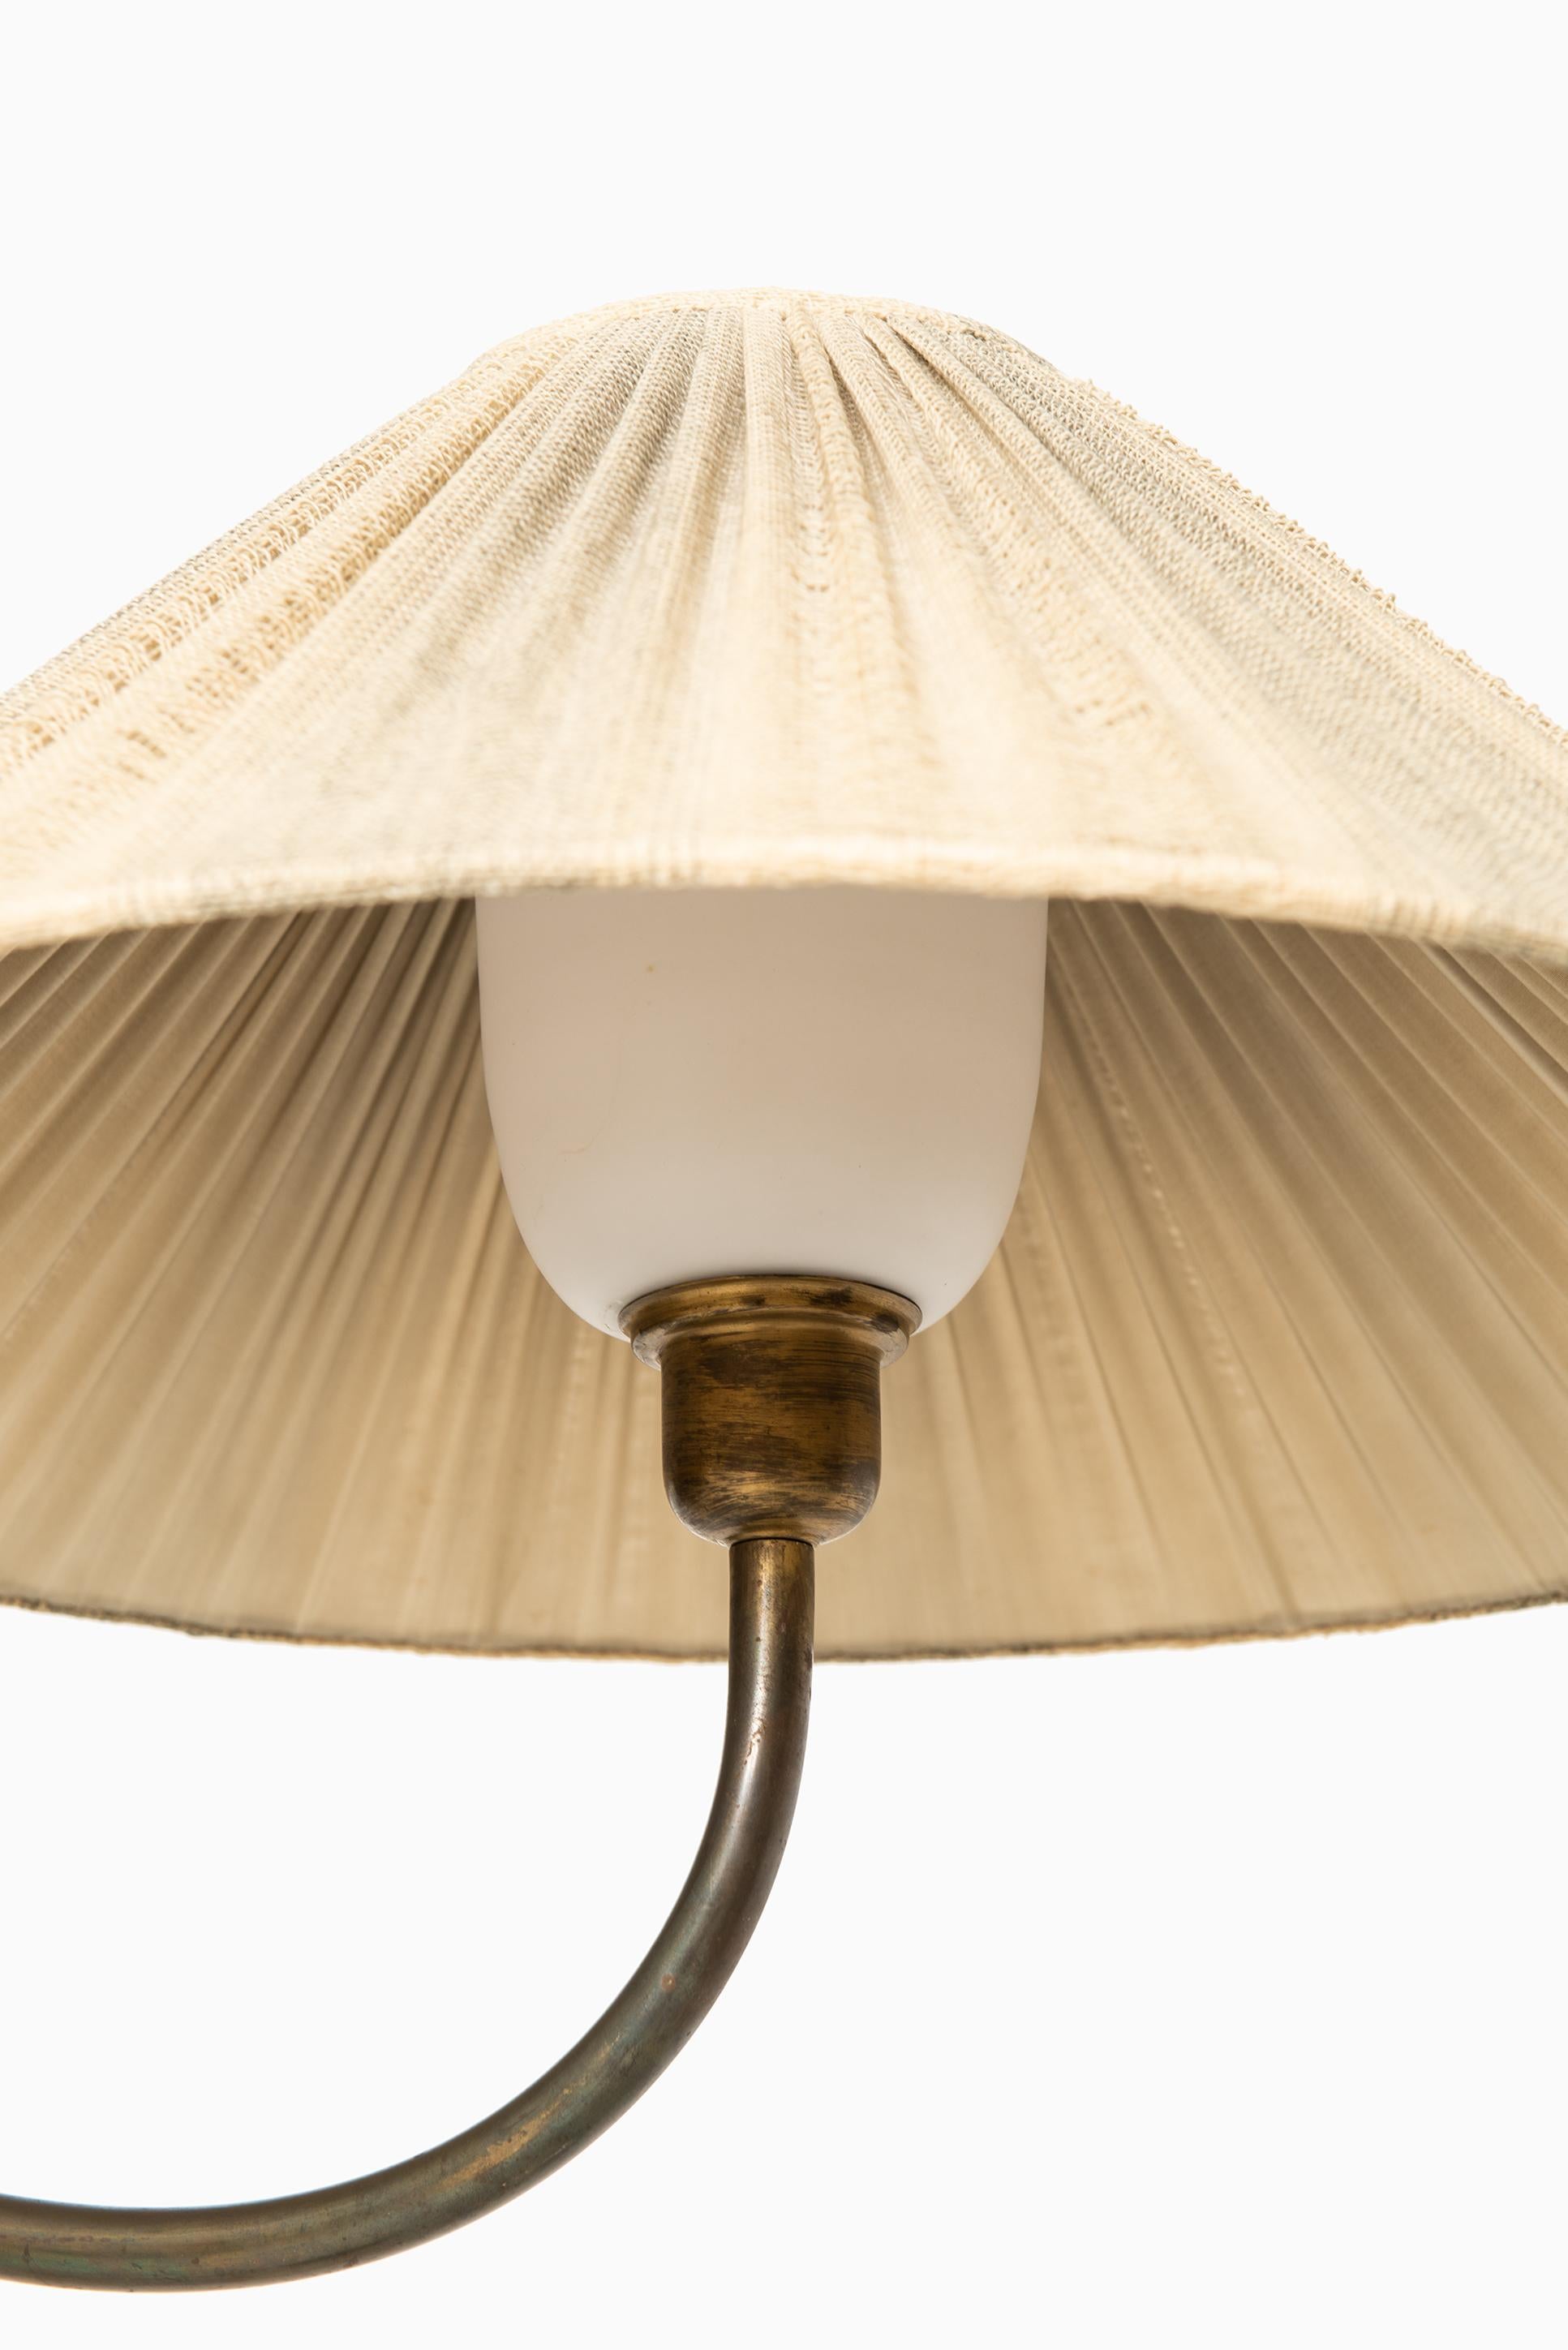 Josef Frank Early Floor Lamp Produced by Svenskt Tenn in Sweden In Good Condition In Limhamn, Skåne län